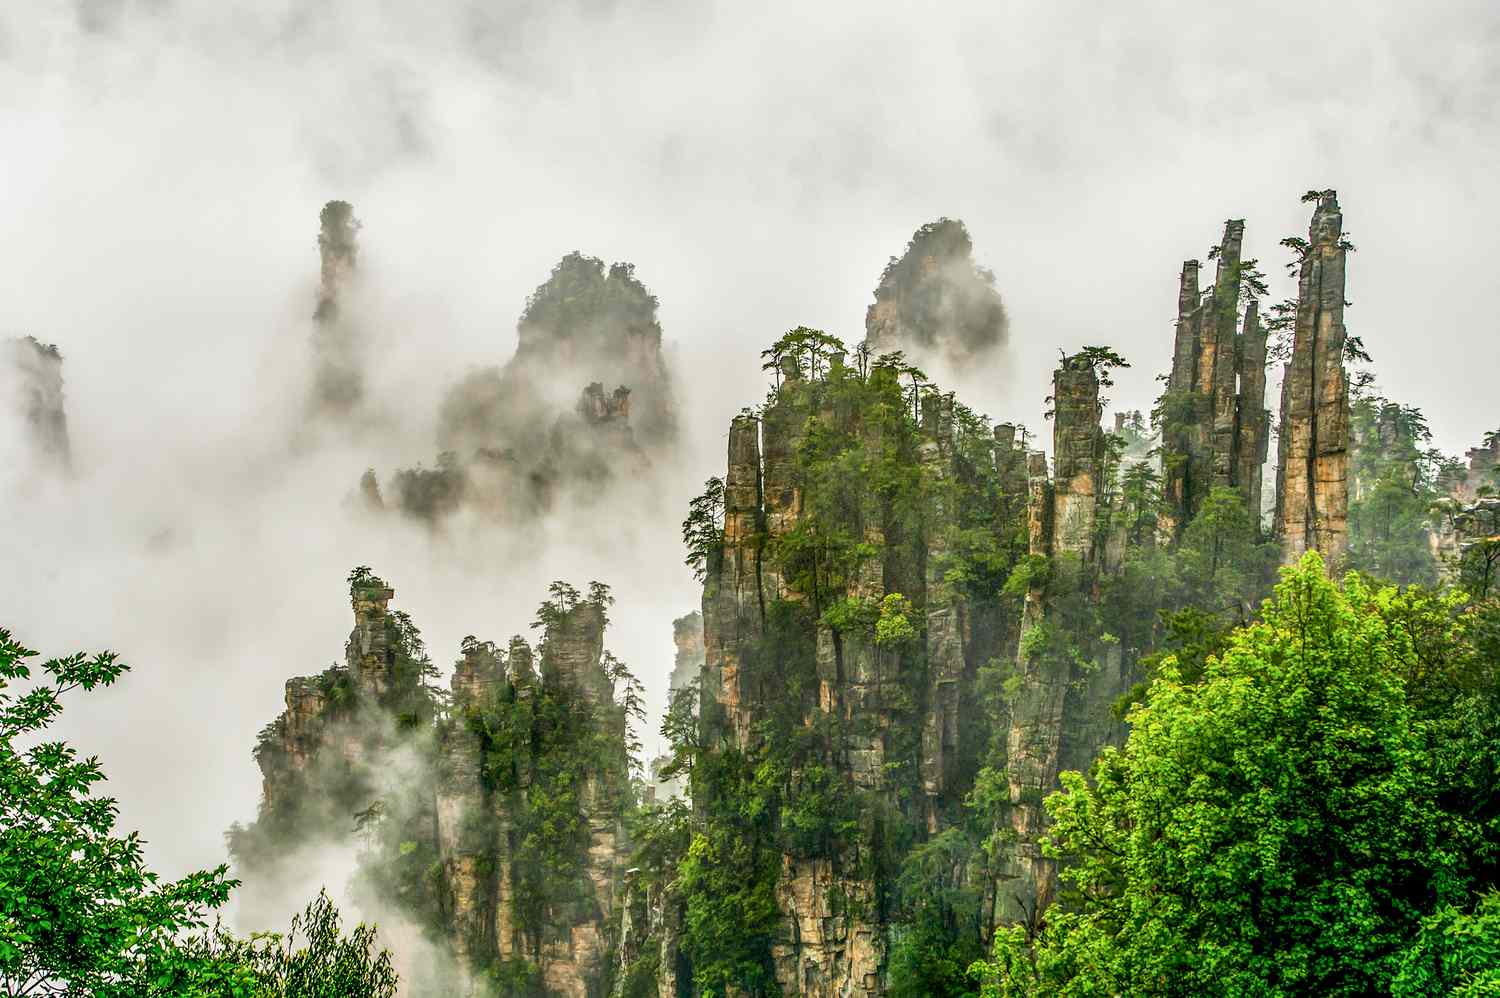 锯齿状的岩石和树木生长在和周围的人,都被雾包围着